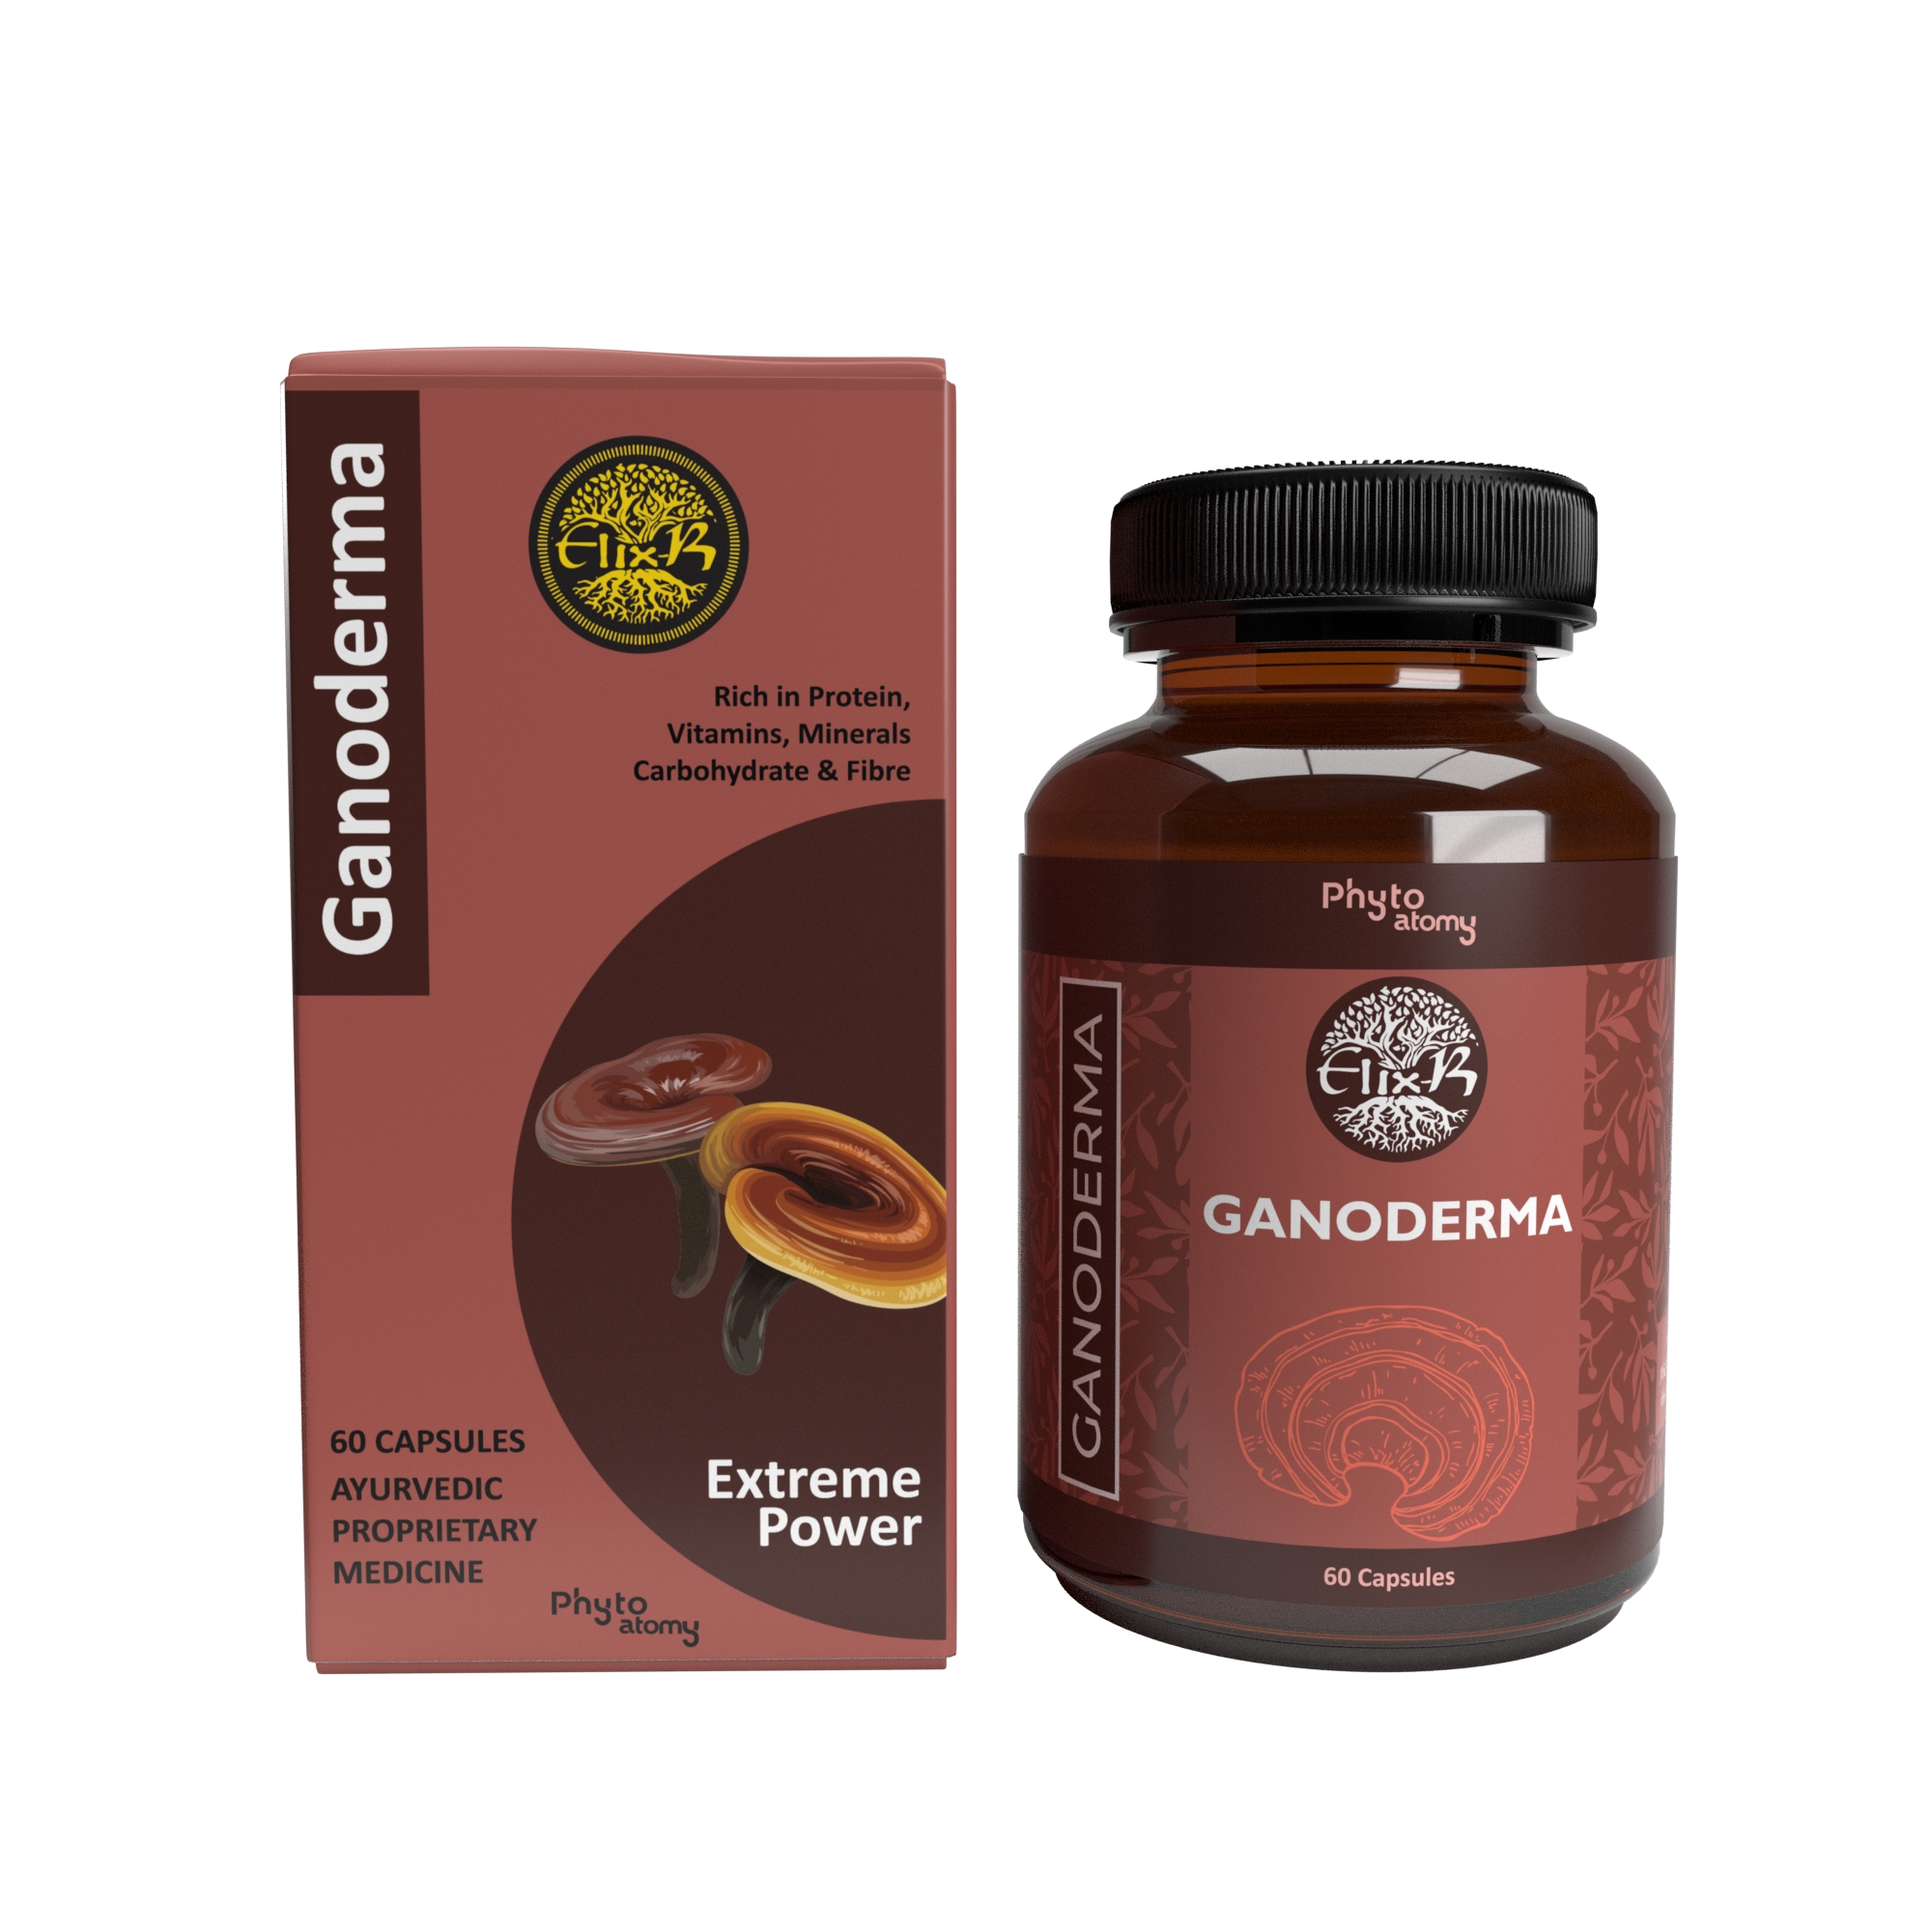 Ganoderma (60 Capsule)